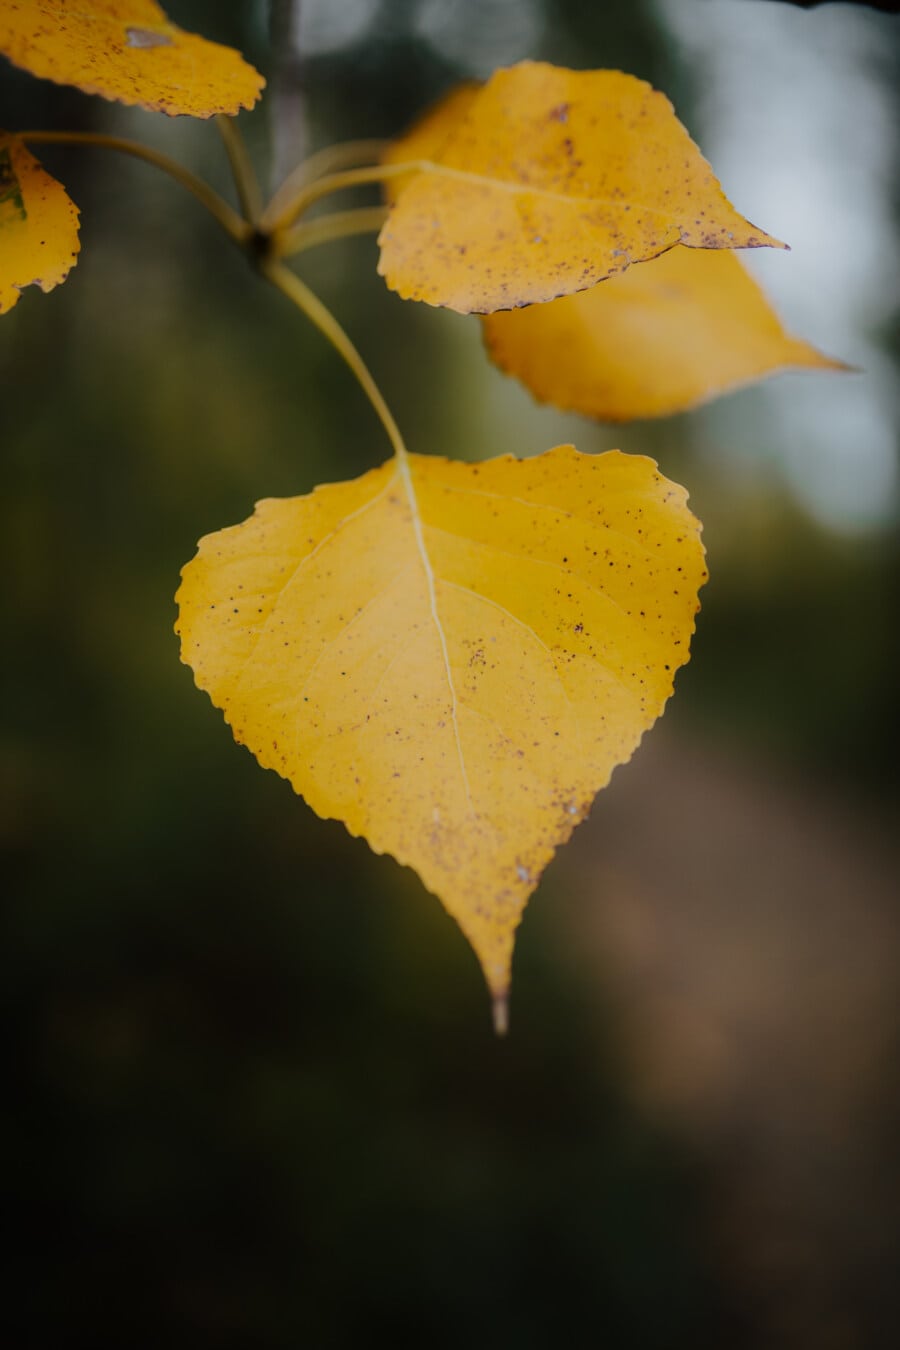 žlutá, žluté listy, žluto hnědá, větvička, zaměření, detaily, zblízka, podzimní sezóna, příroda, podzim